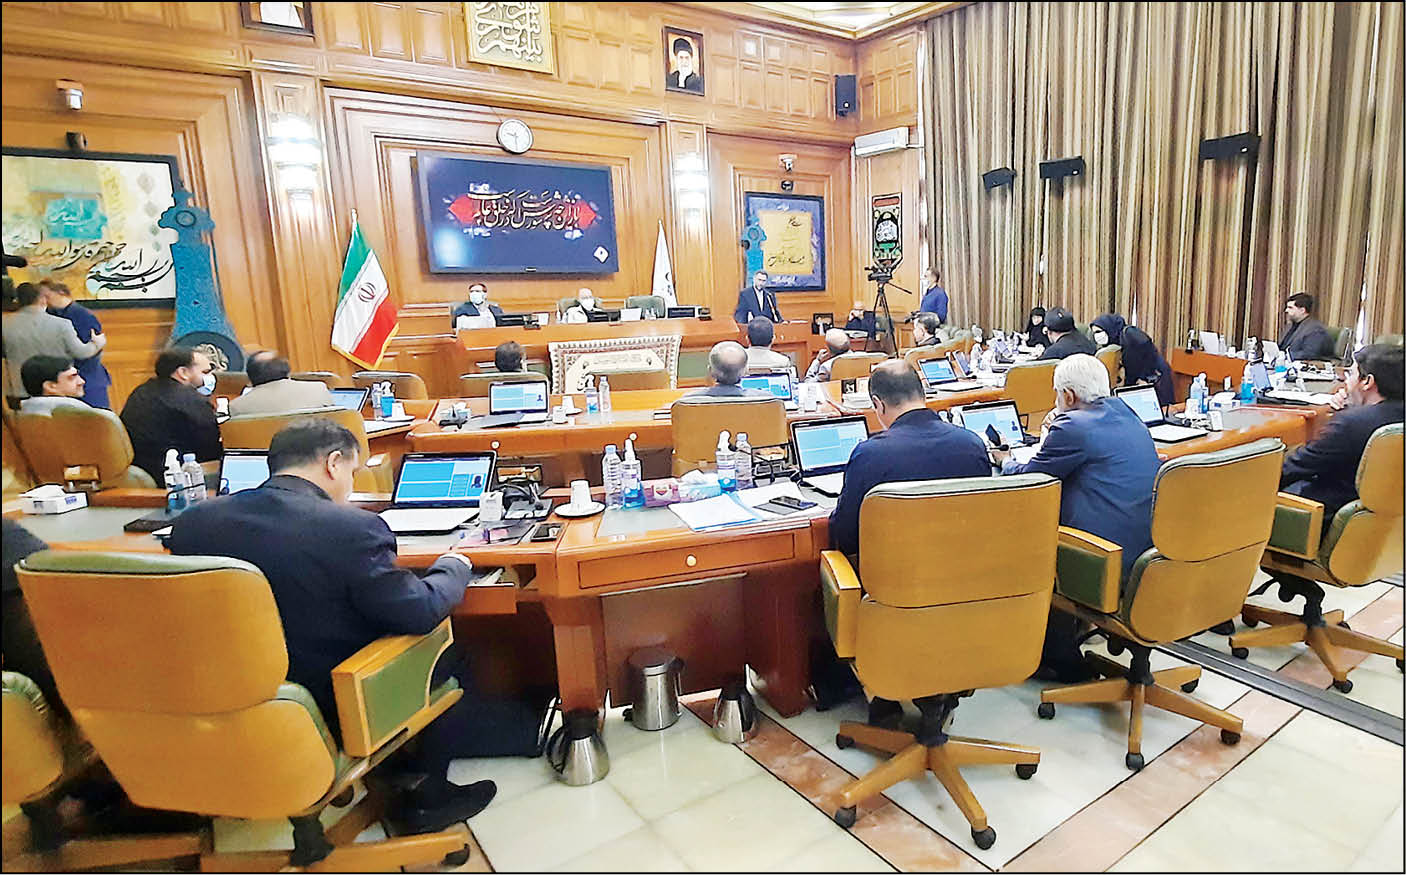 مدیرکل آموزش‌وپرورش شهر تهران، در آستانه بازگشایی مدارس، در صحن پارلمان شهری حاضر شد و گزارشی از کمبودها و درخواست‌ها ارائه داد